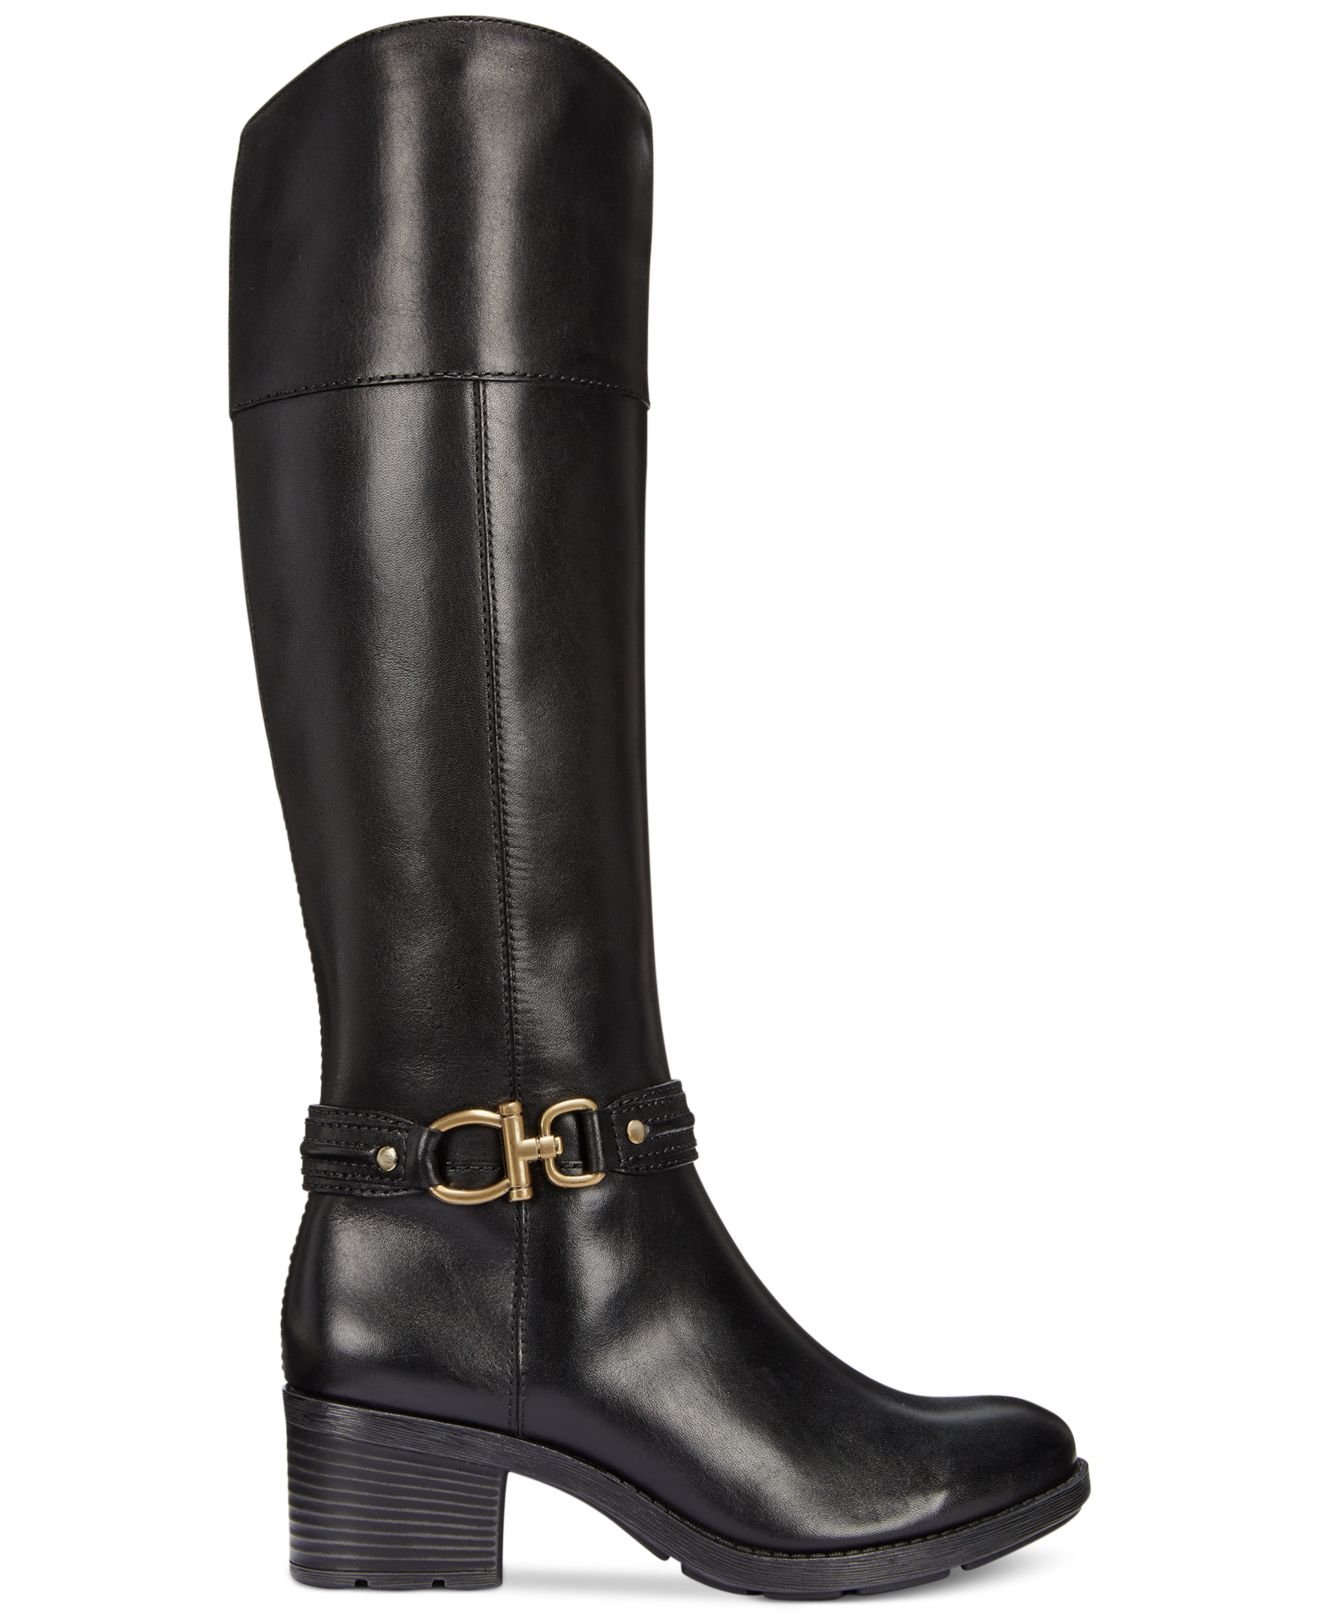 Bandolino Ulla Wide Calf Riding Boots in Black (Black Leather)